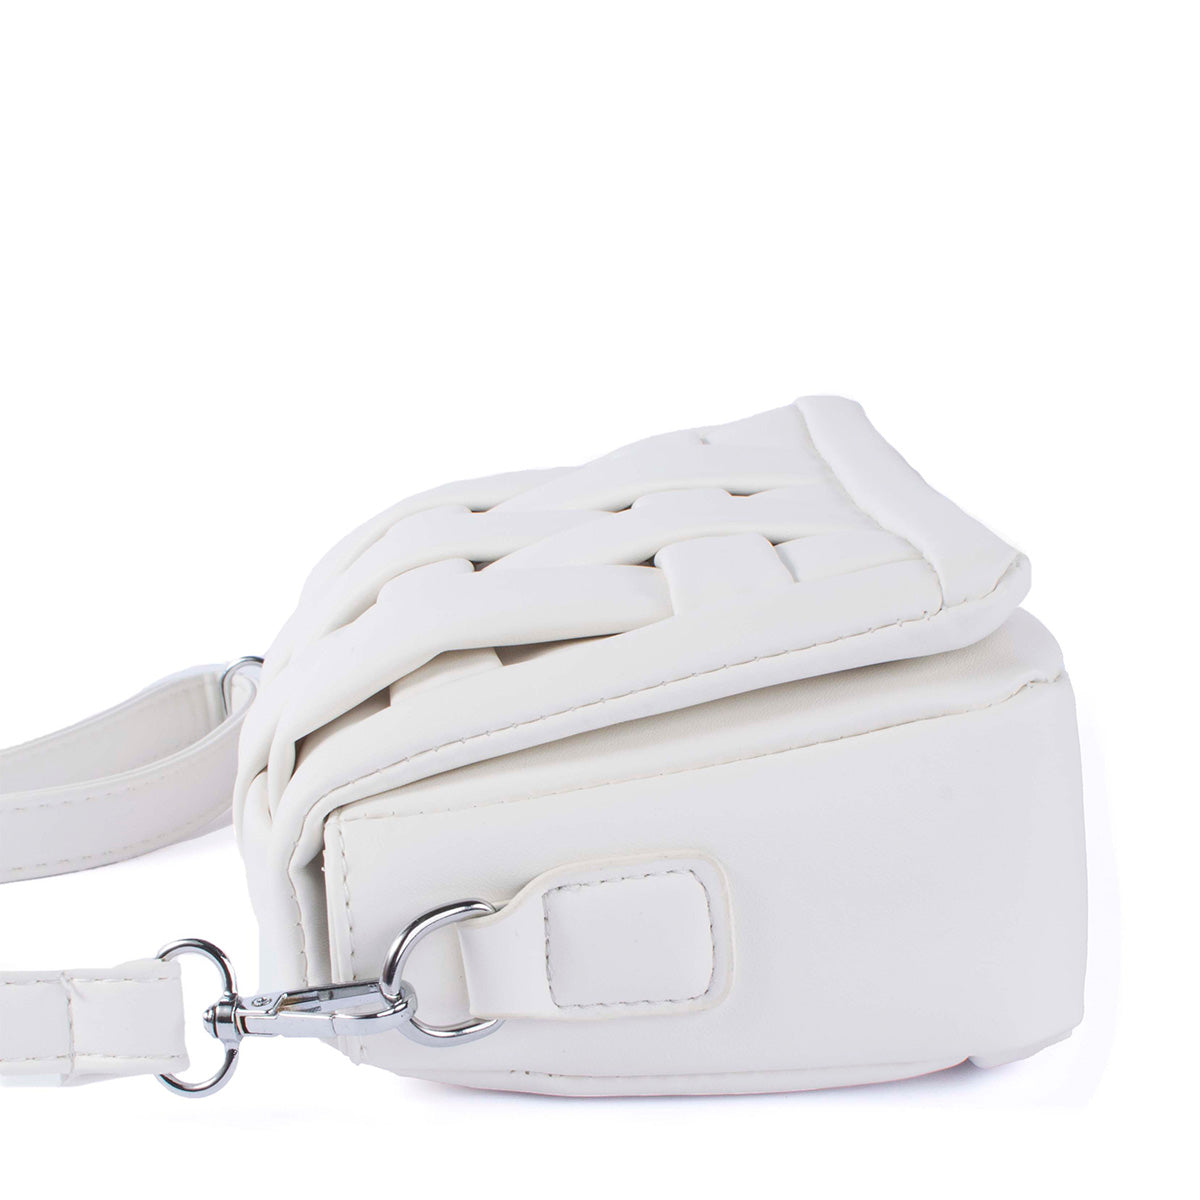 Bolso tipo bandolera color blanco diseño acolchado y moderno